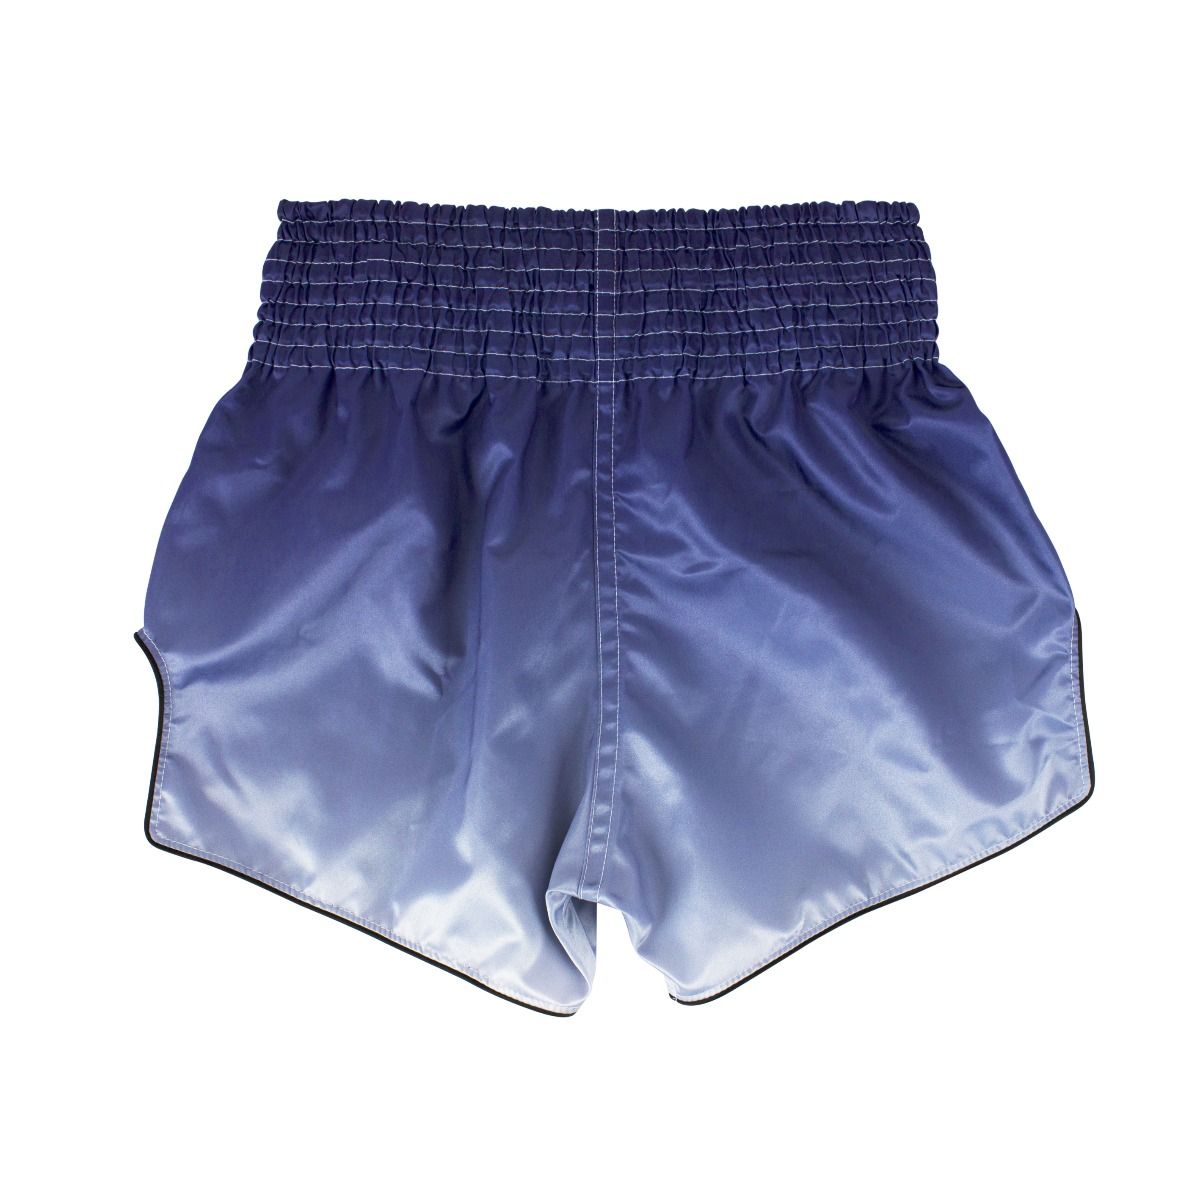 Fairtex Fade Muay Thai Shorts -BS1905 (Blue)-S-37695